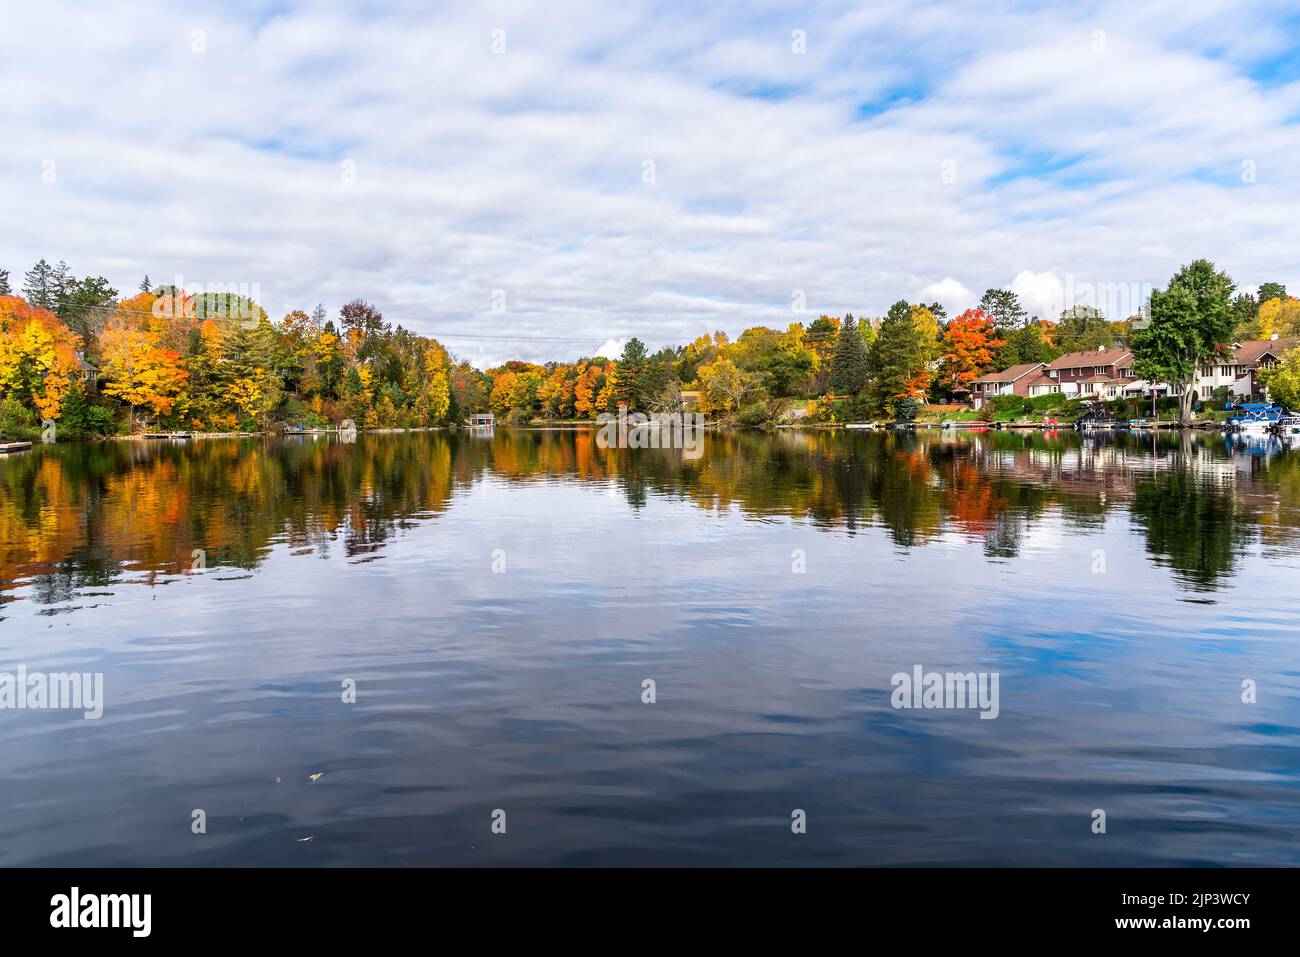 Häuser und Bootshäuser an den bewaldeten Ufern eines Sees an einem bewölkten Herbstmorgen. Atemberaubende Herbstfärbung und Spiegelung in den ruhigen Gewässern. Stockfoto